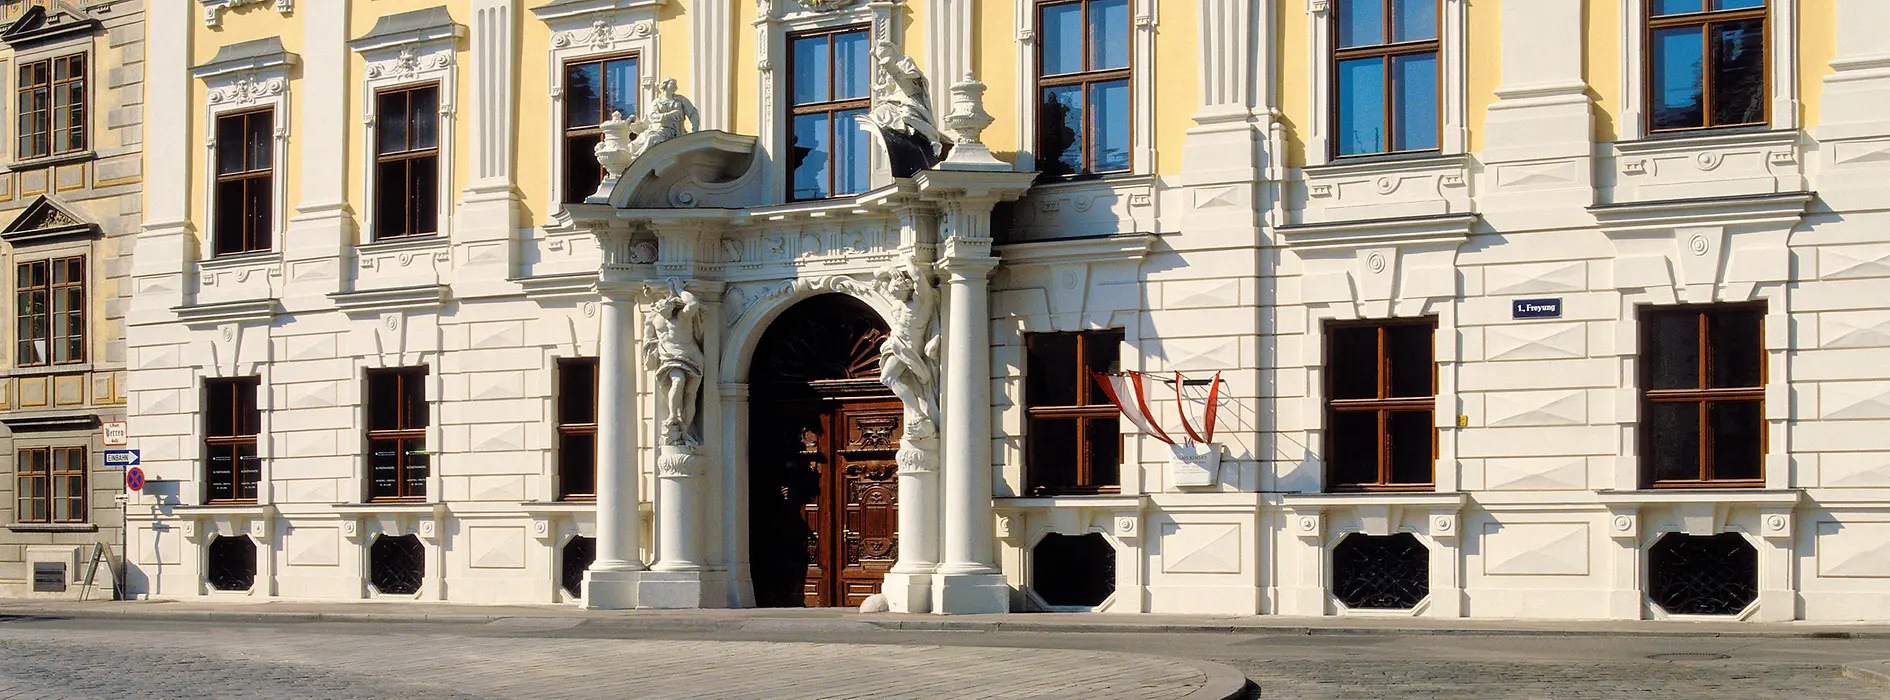 Palais Daun-Kinsky